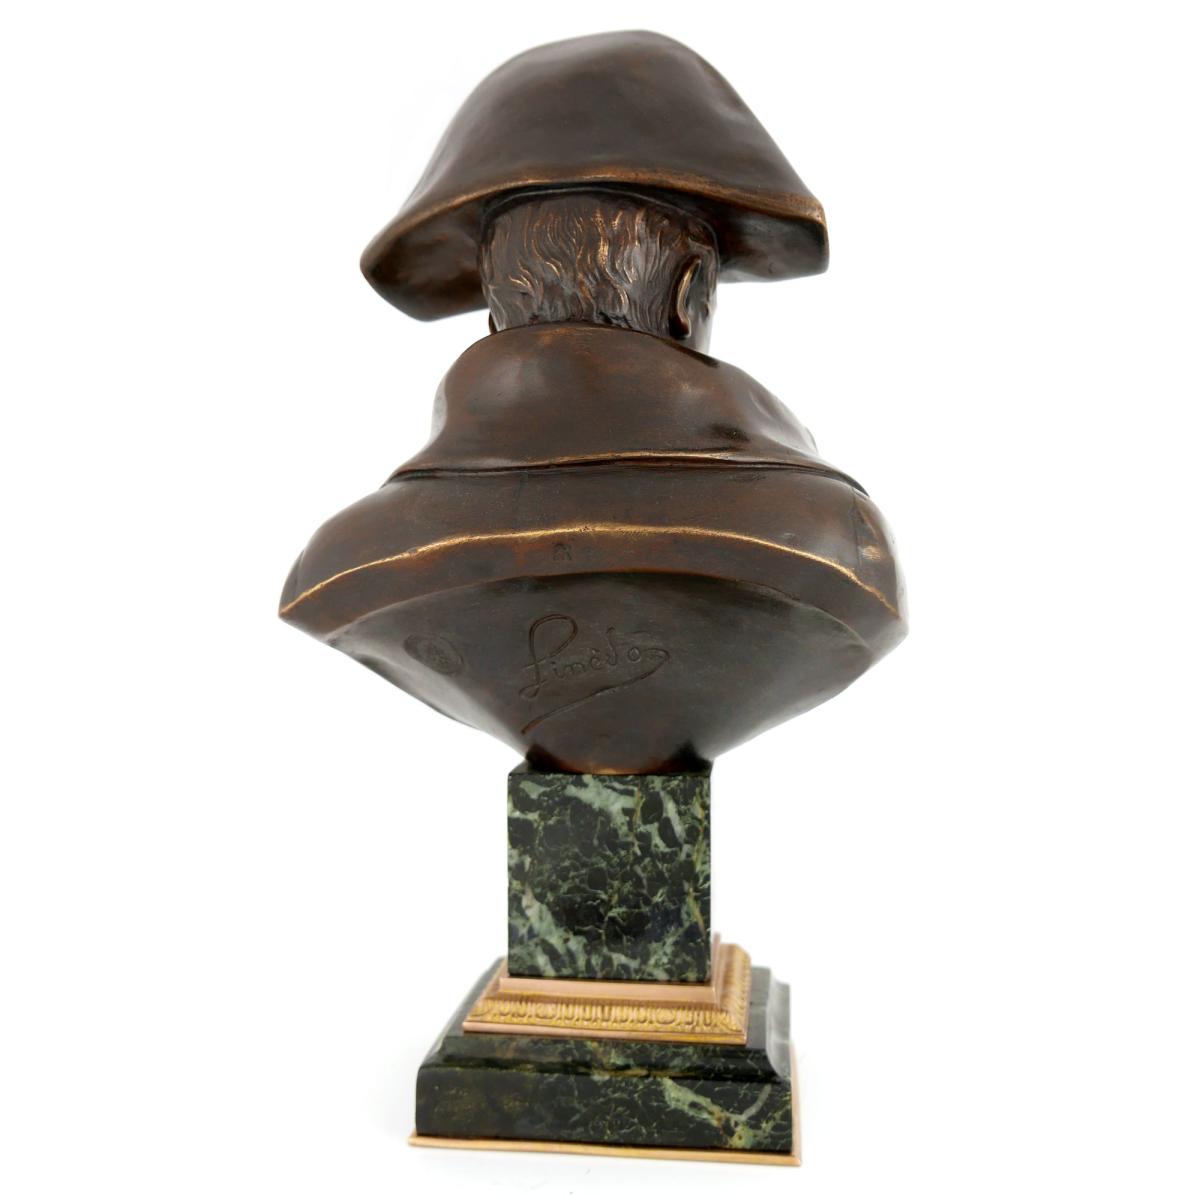 Emperor Napoleon I - A Bronze Bust